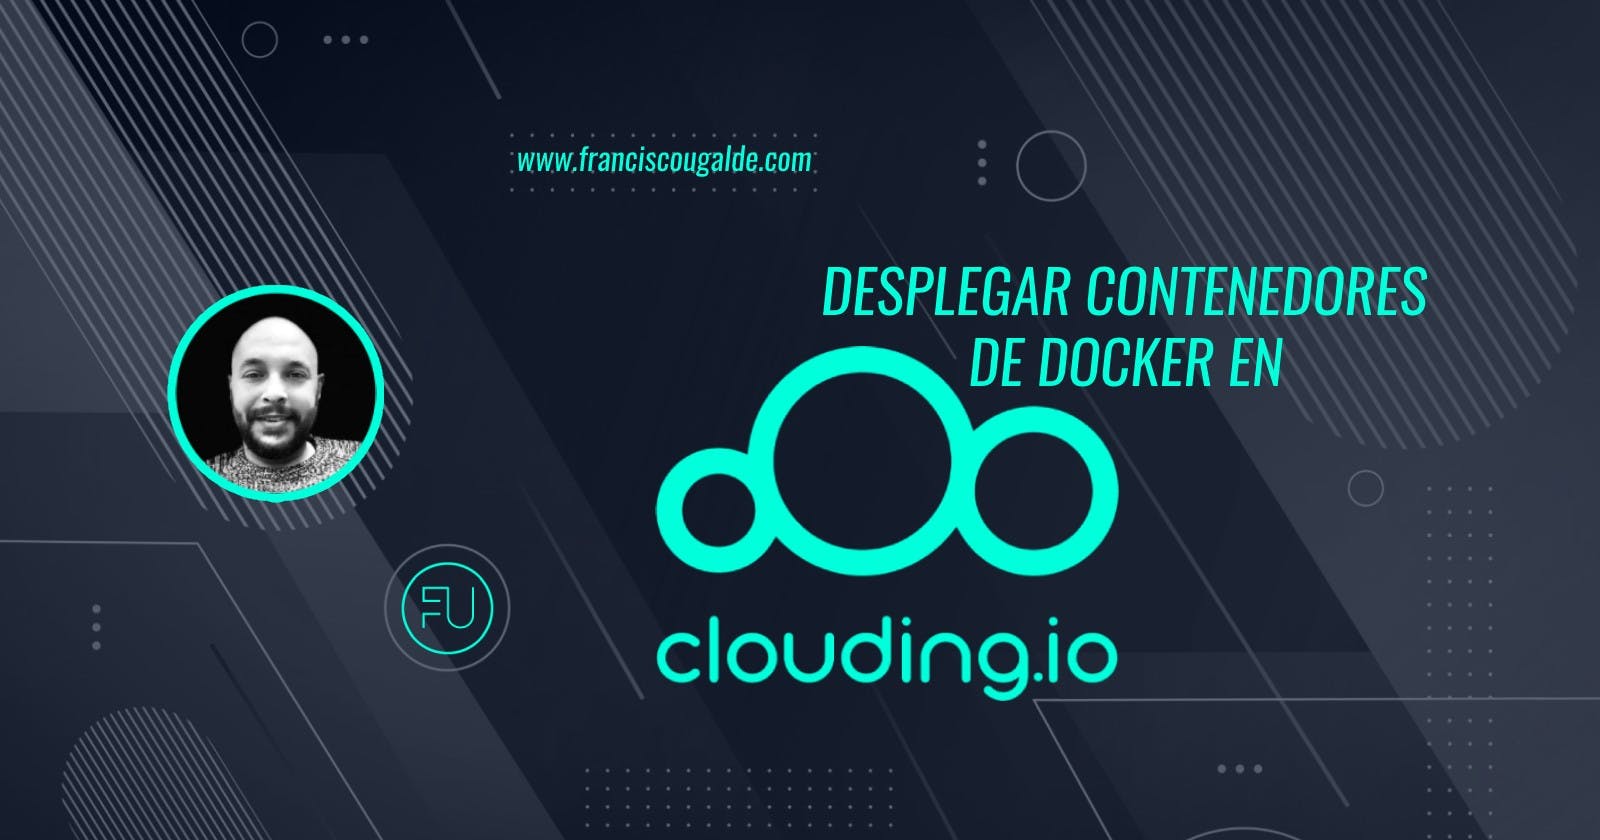 Desplegar contenedores de Docker en Clouding.io